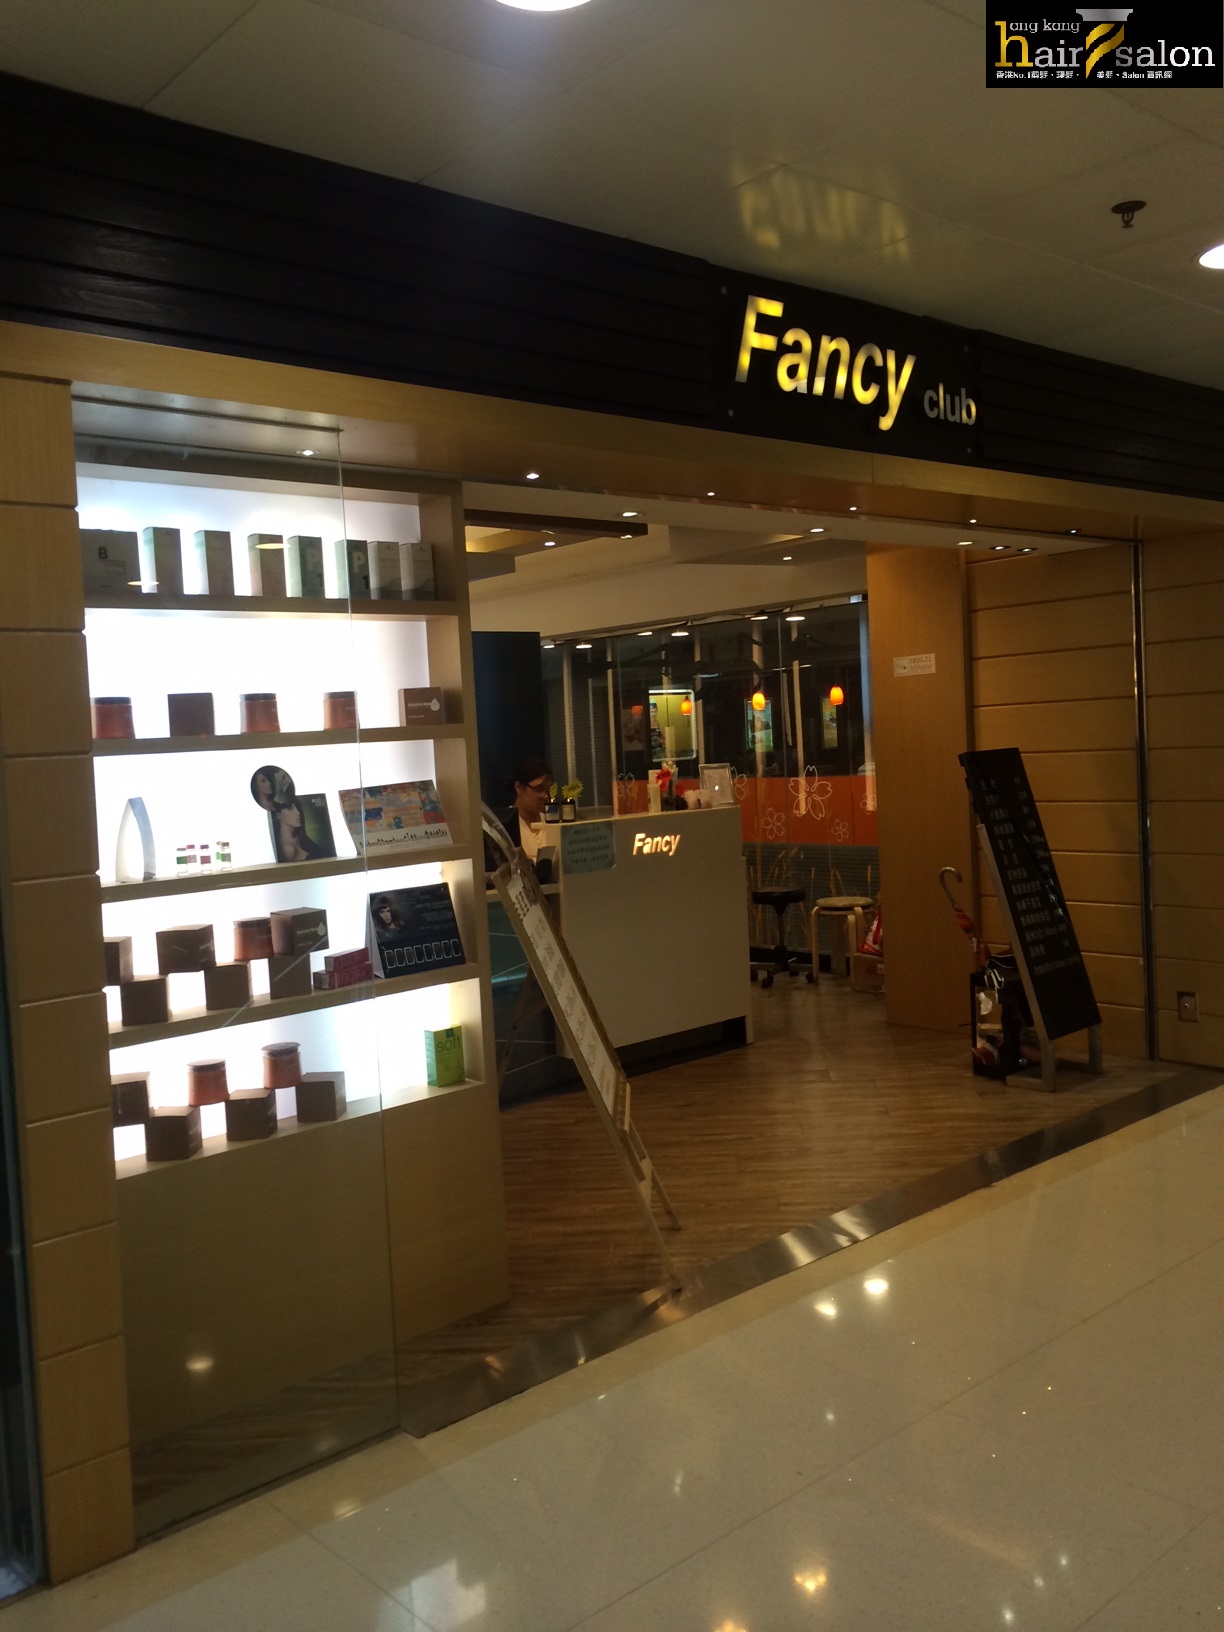 髮型屋: FANCY CLUB